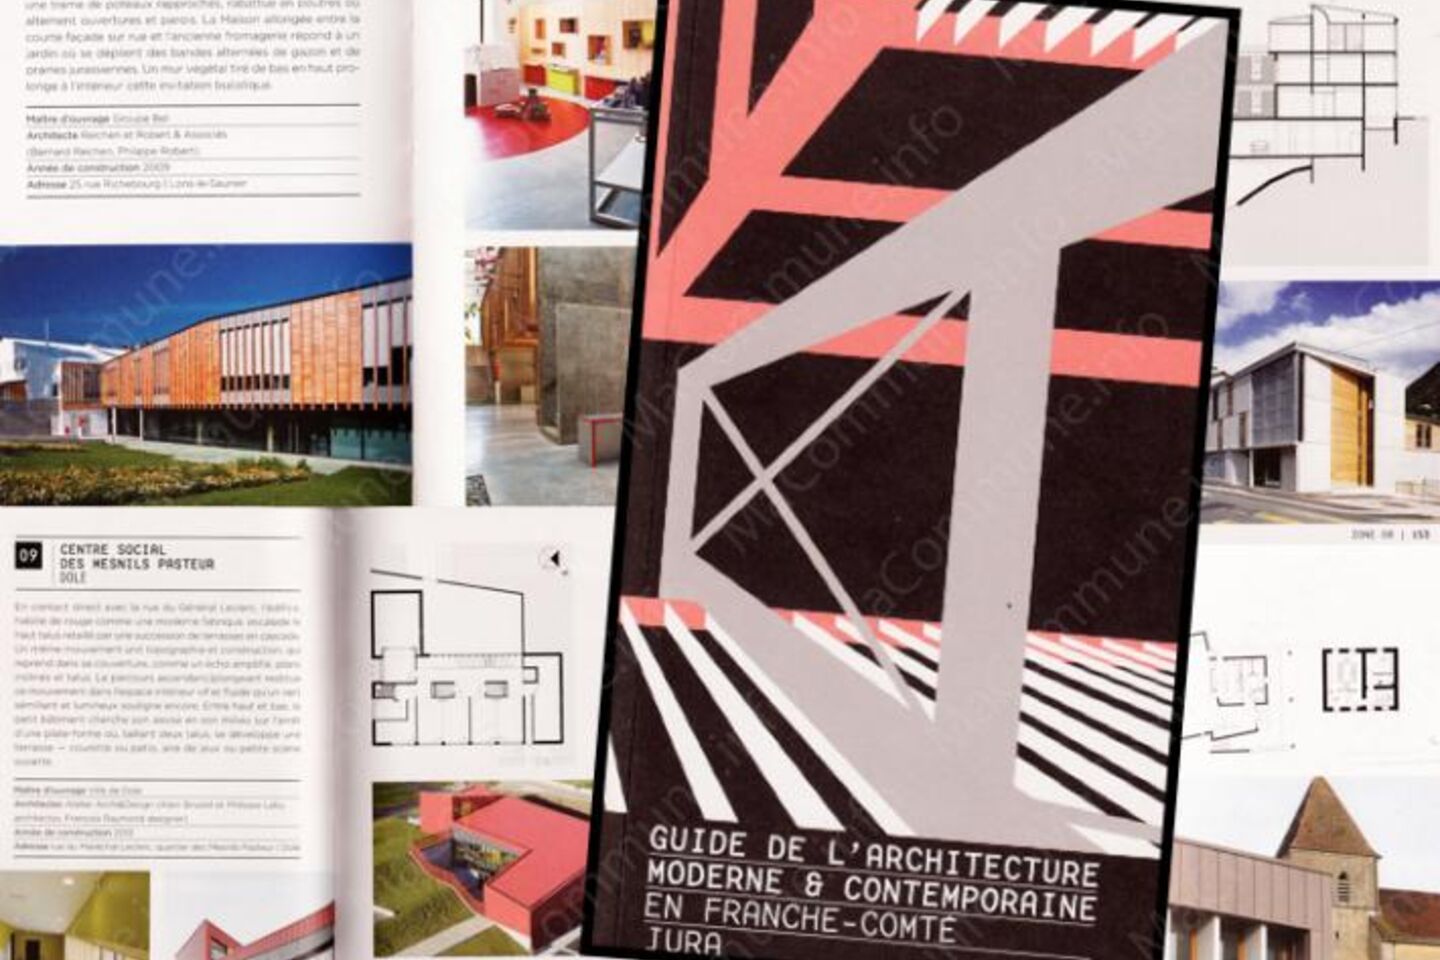 Guide de l'architecture moderne et contemporaine en Franche-Comté